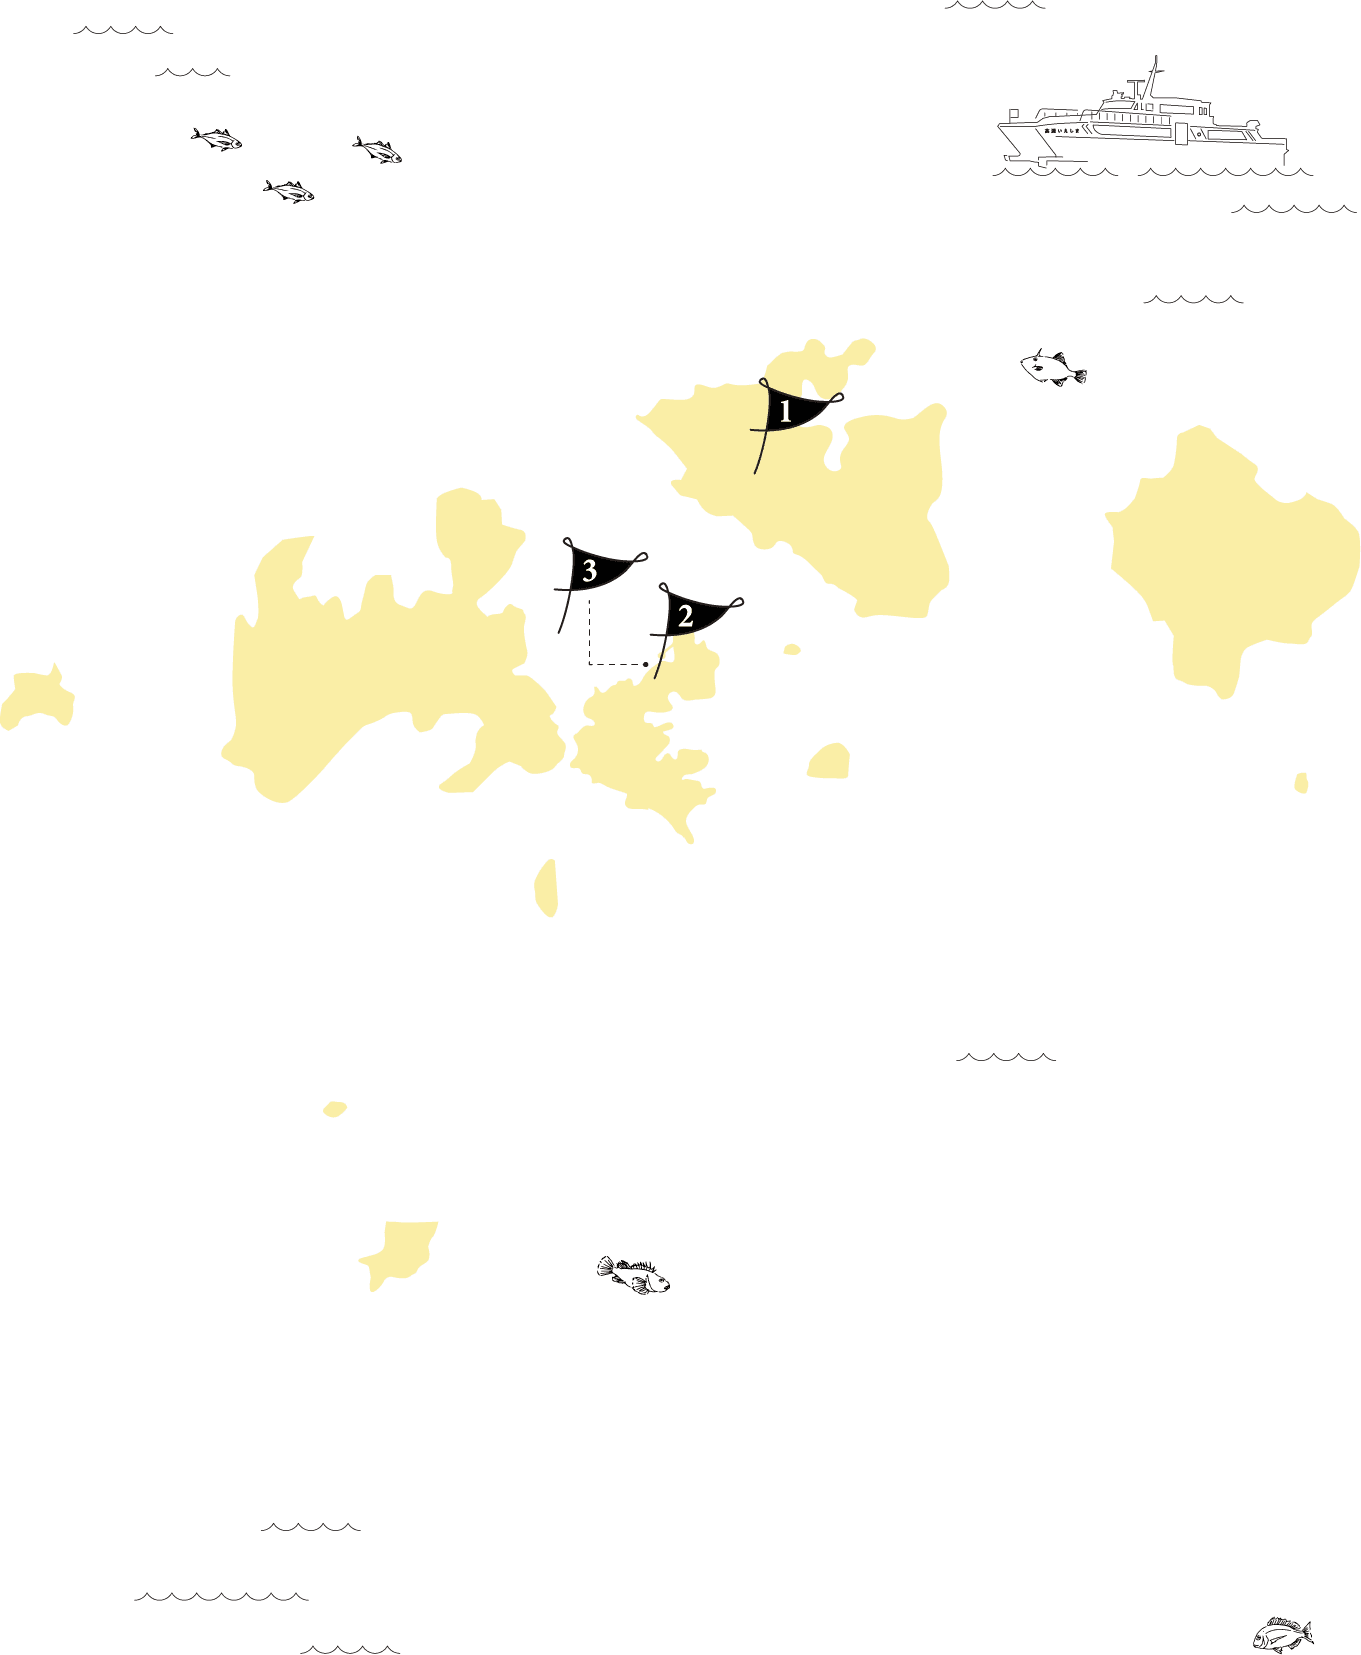 家島諸島の地図 姫路から出ている高速フェリー、家島諸島近海で夏に釣れる魚のイラスト